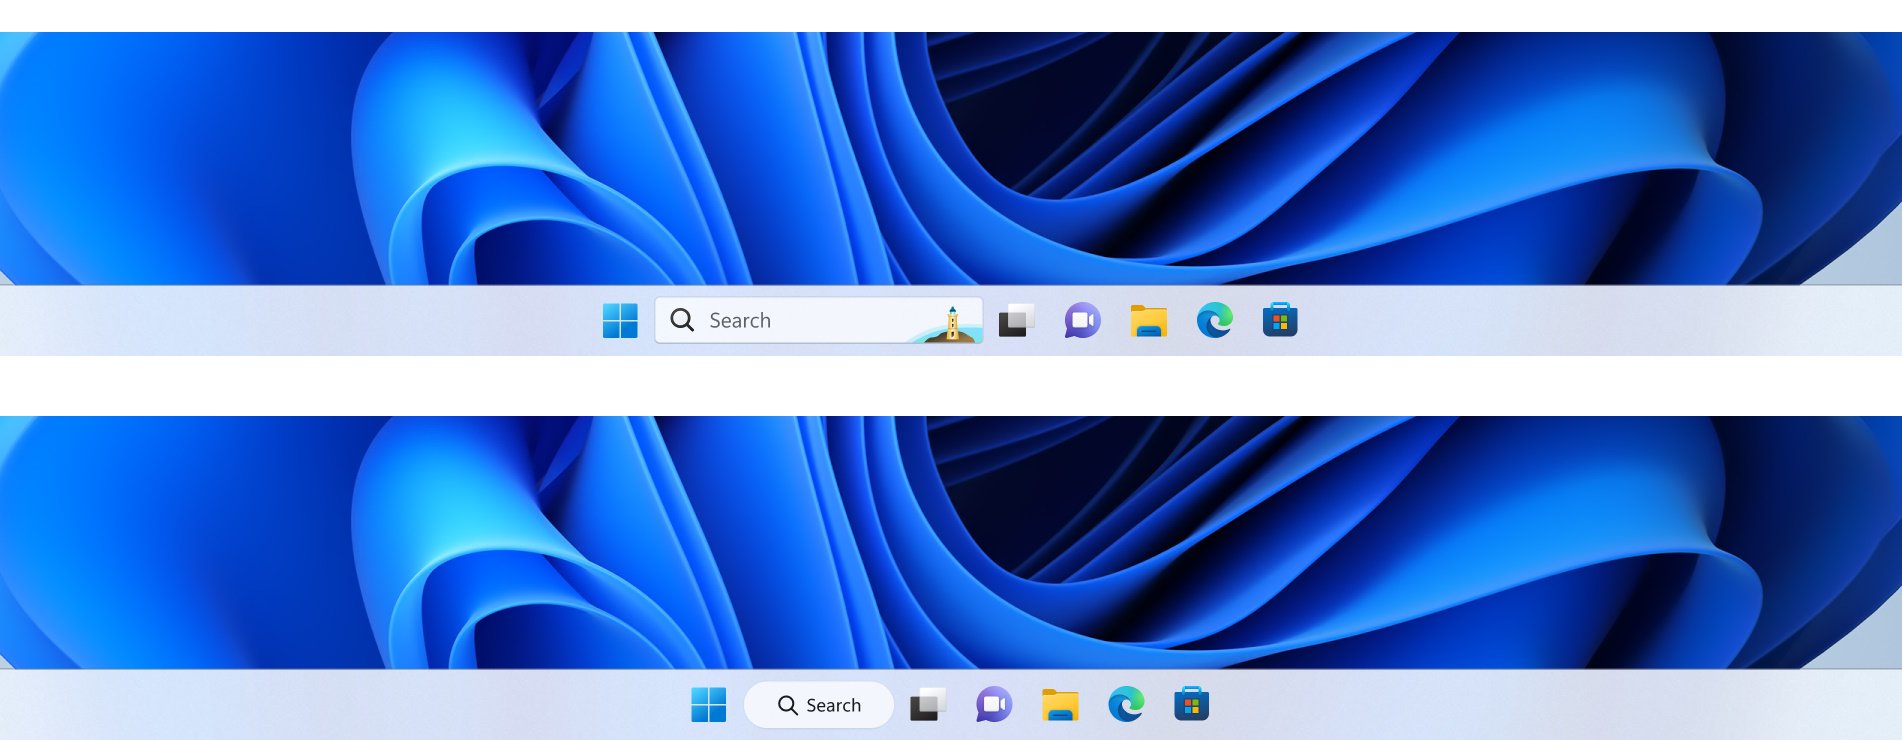 Buscar en la barra de tareas de Windows 11 